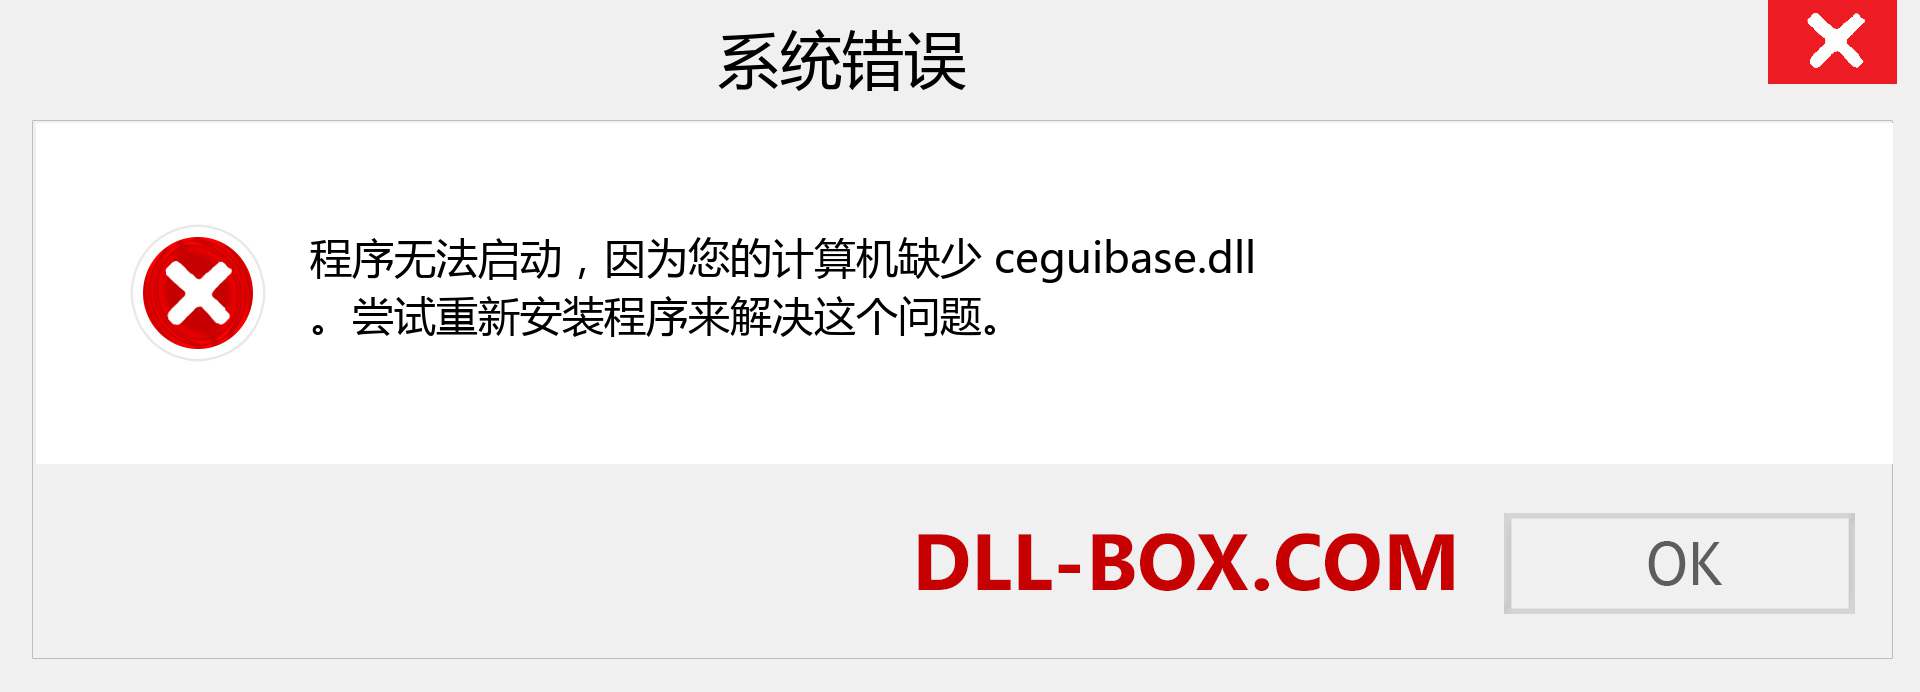 ceguibase.dll 文件丢失？。 适用于 Windows 7、8、10 的下载 - 修复 Windows、照片、图像上的 ceguibase dll 丢失错误